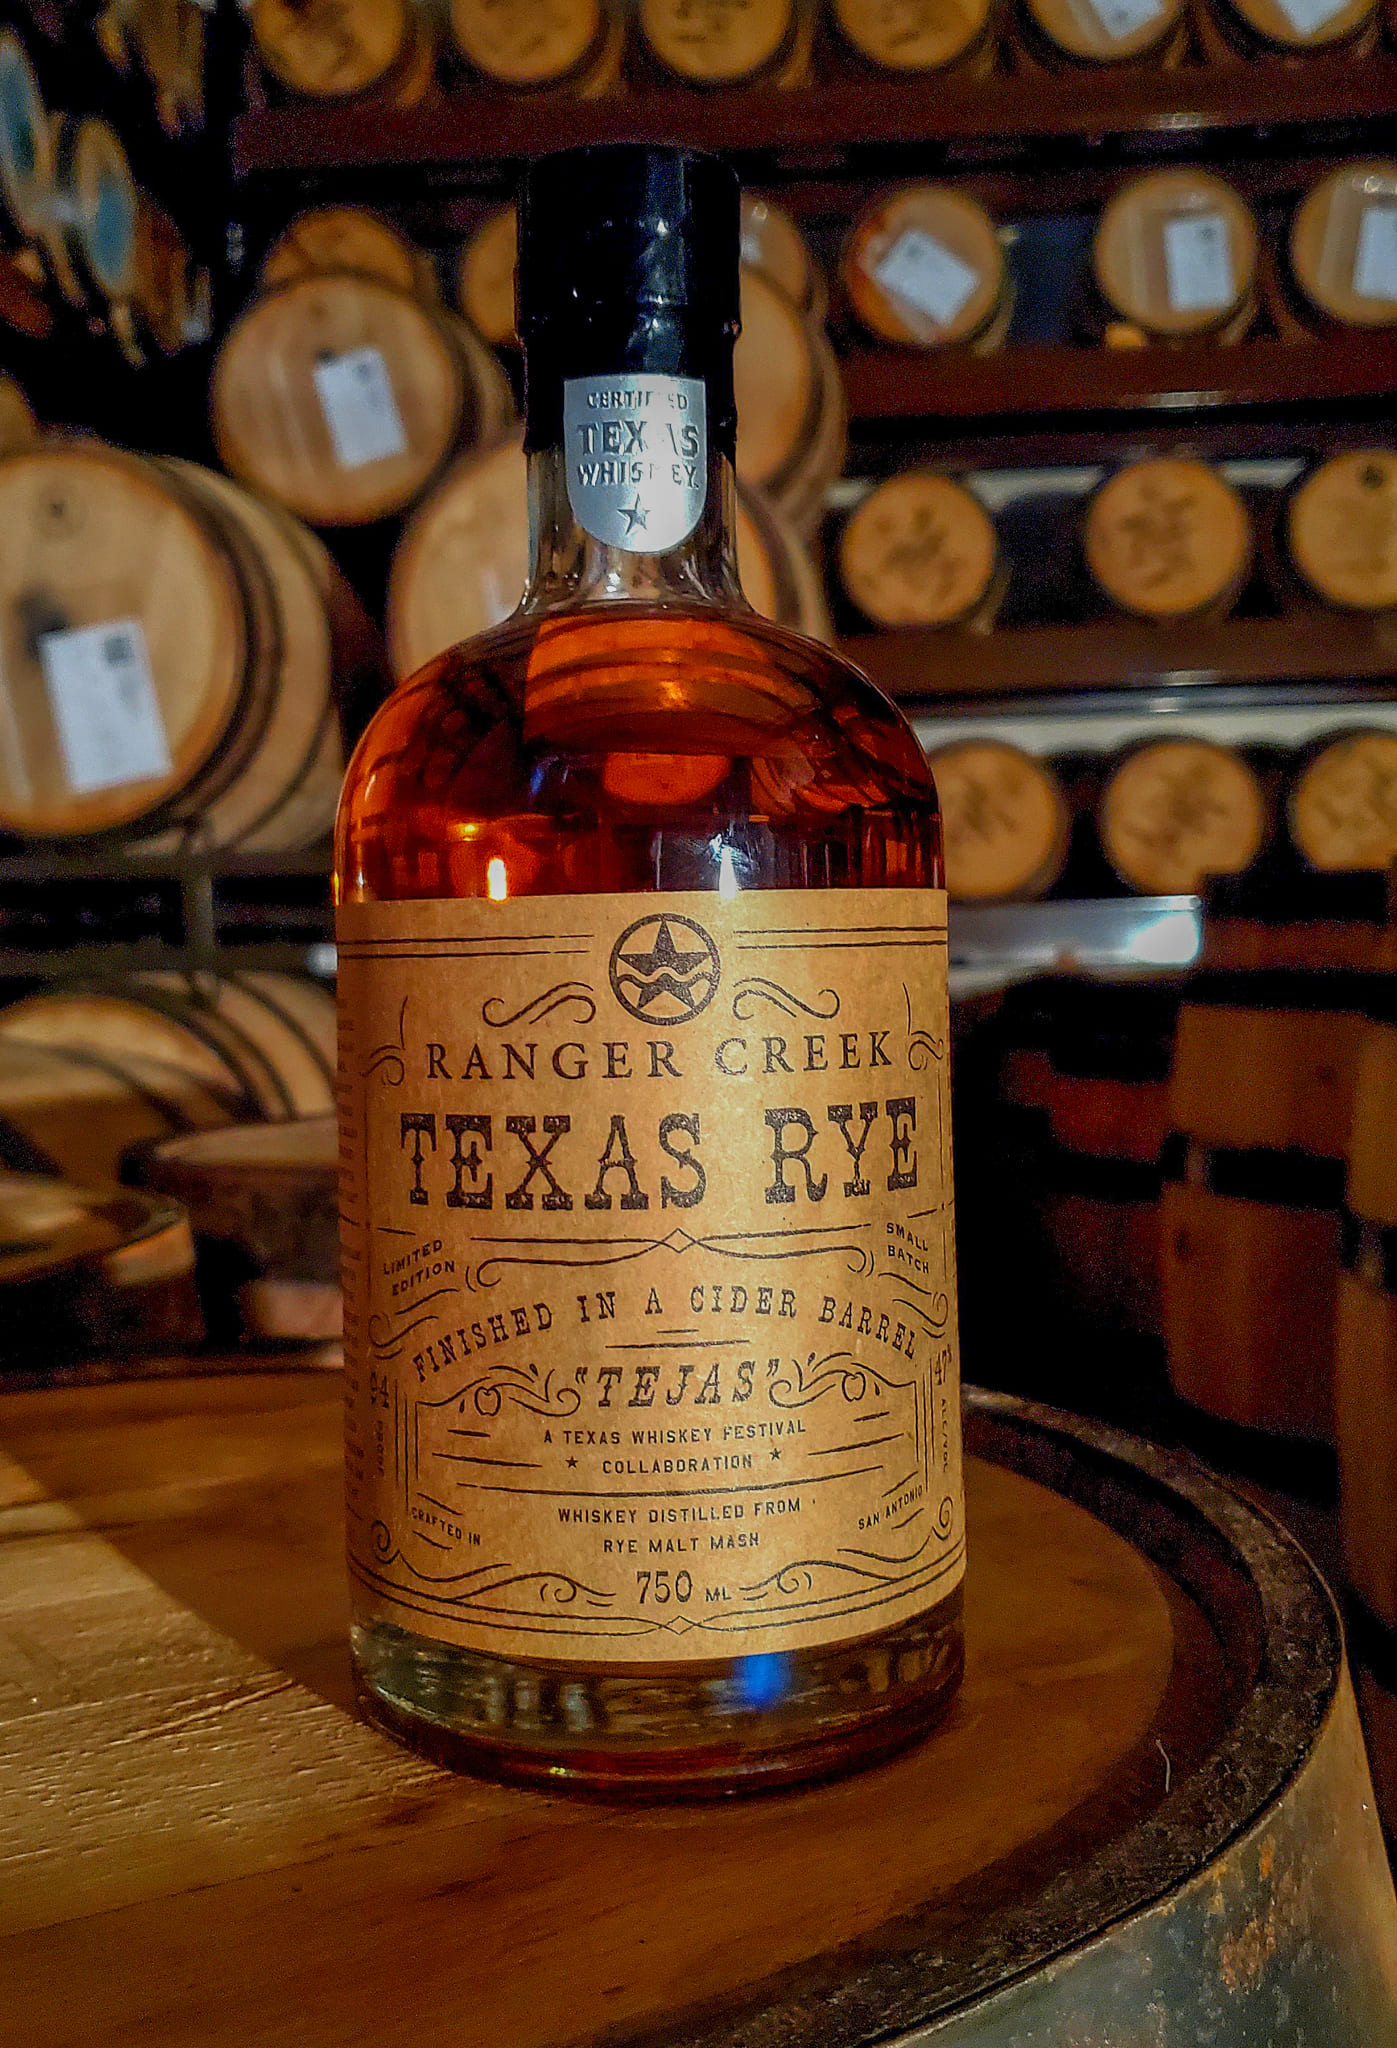 texas whiskey festival 2019 austin